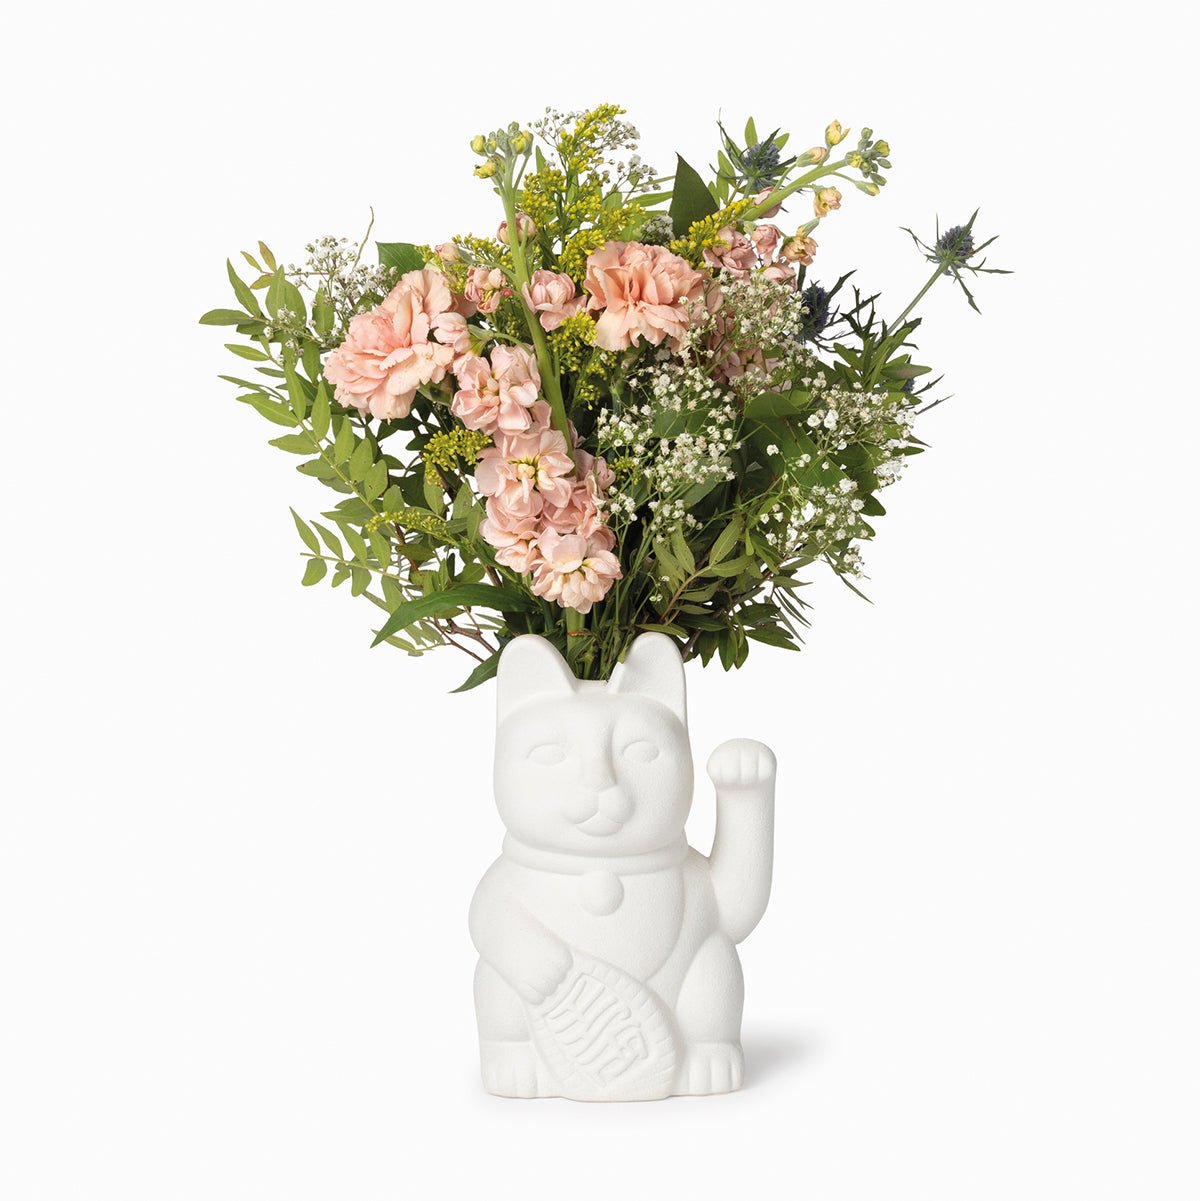 Elegant Neko White Vase: A Touch of Japanese Charm - PAWS CLUB